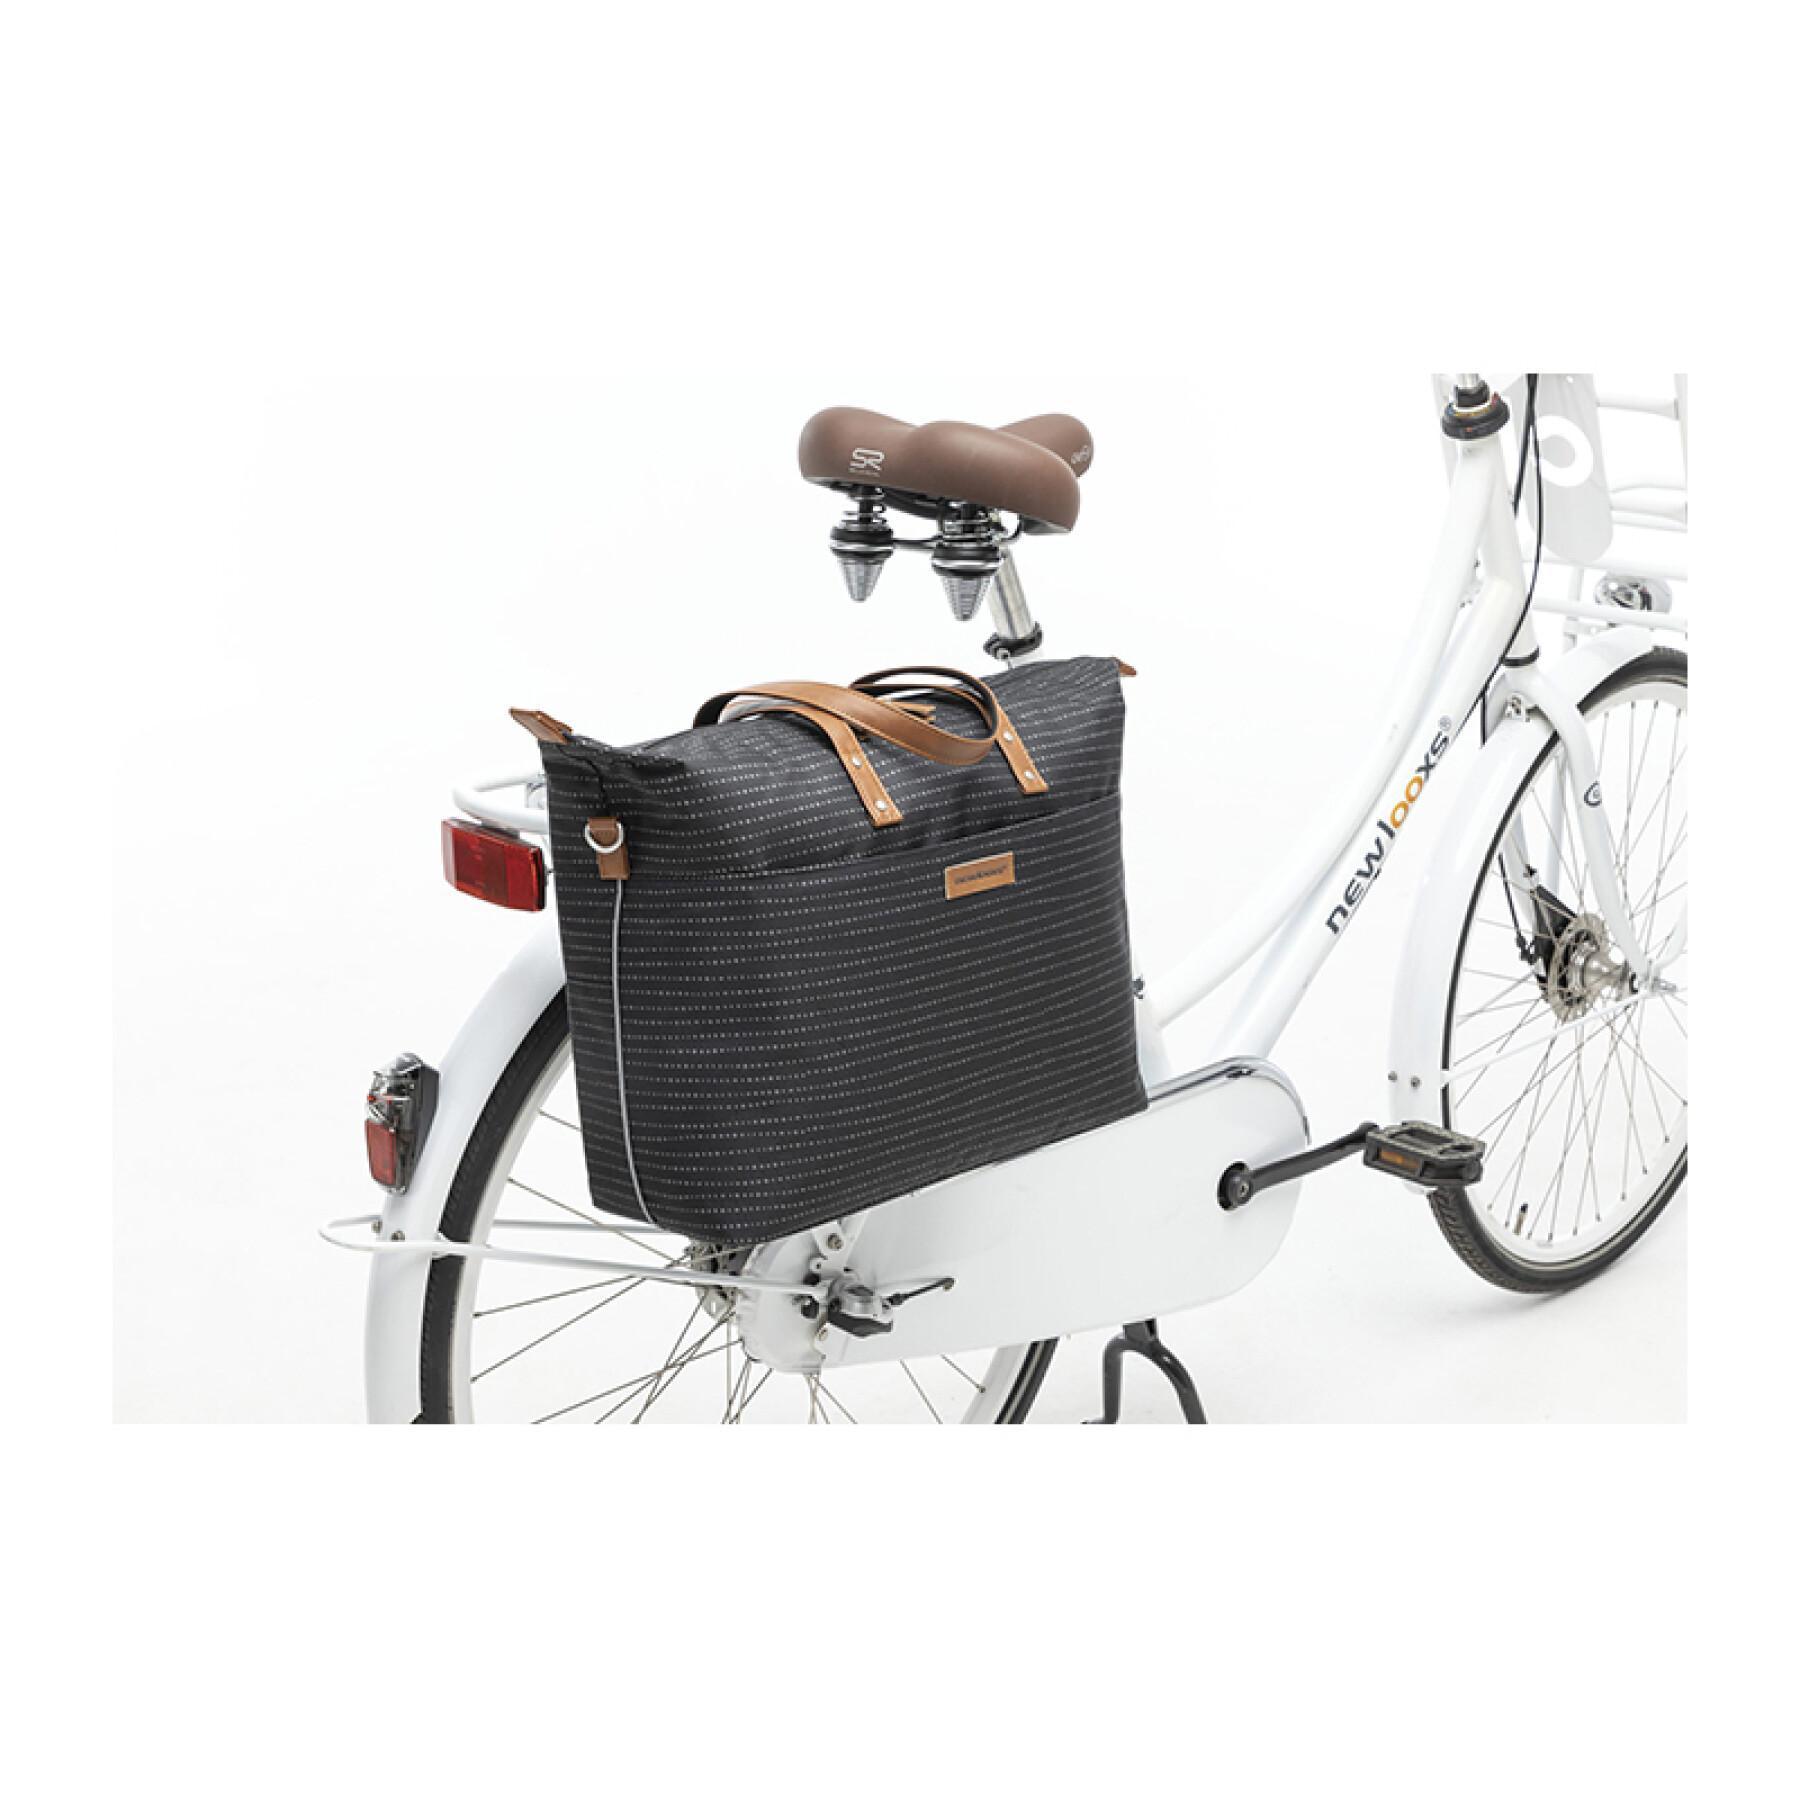 Sacoche porte-bagage vélo imperméable en polyester avec réfléchissant New Looxs Tendo Nomi